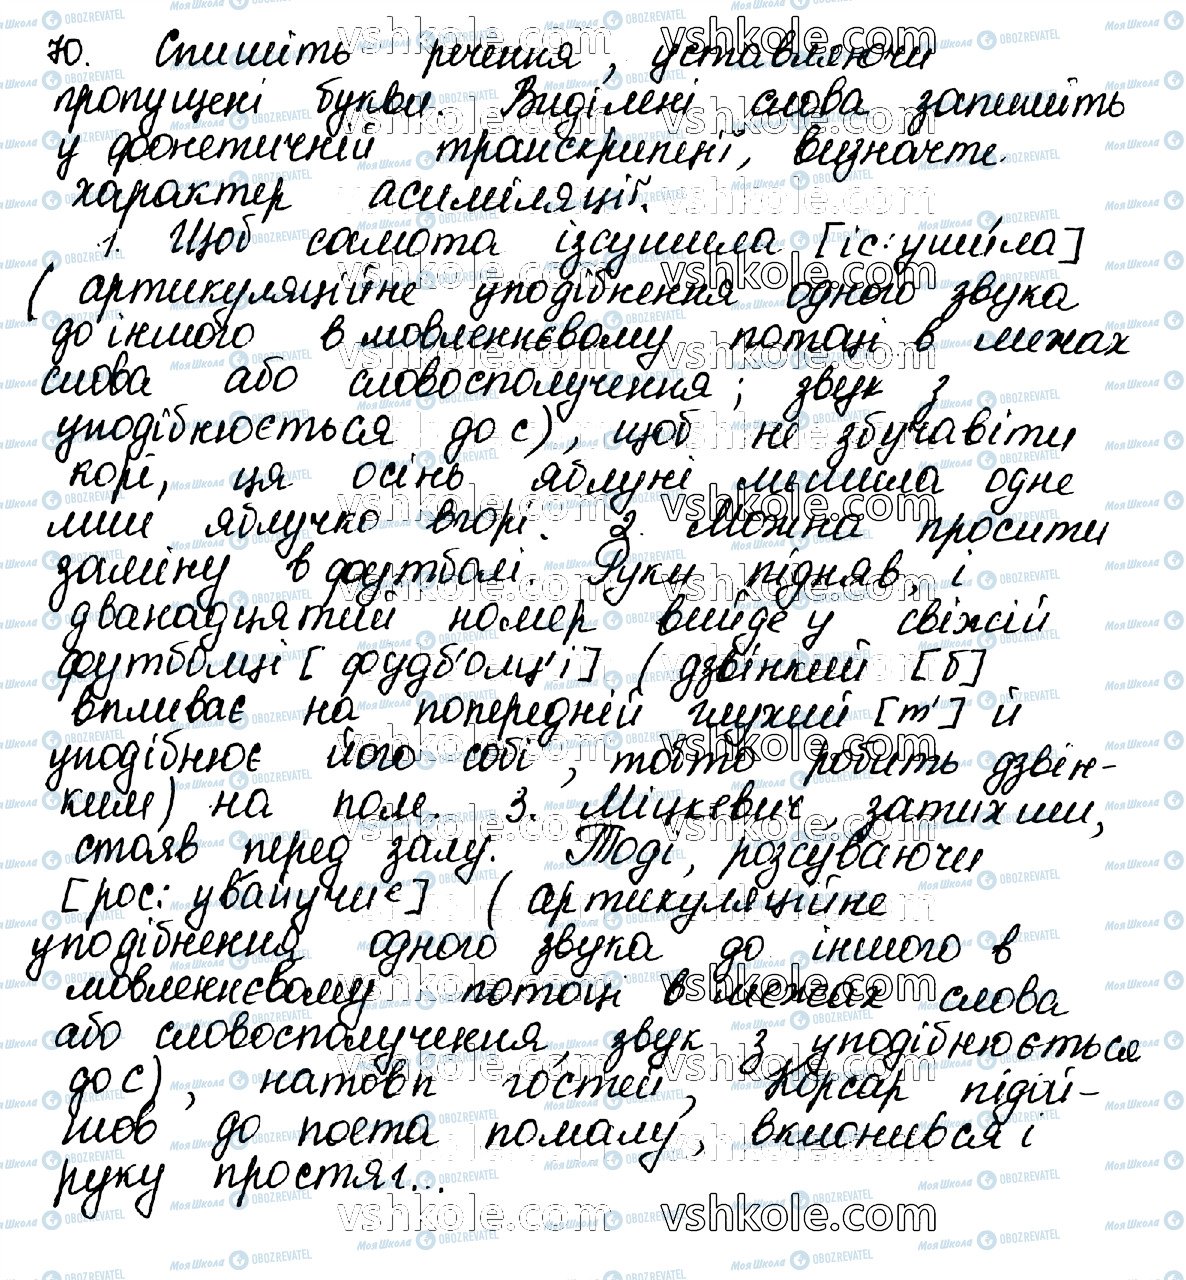 ГДЗ Українська мова 10 клас сторінка 70